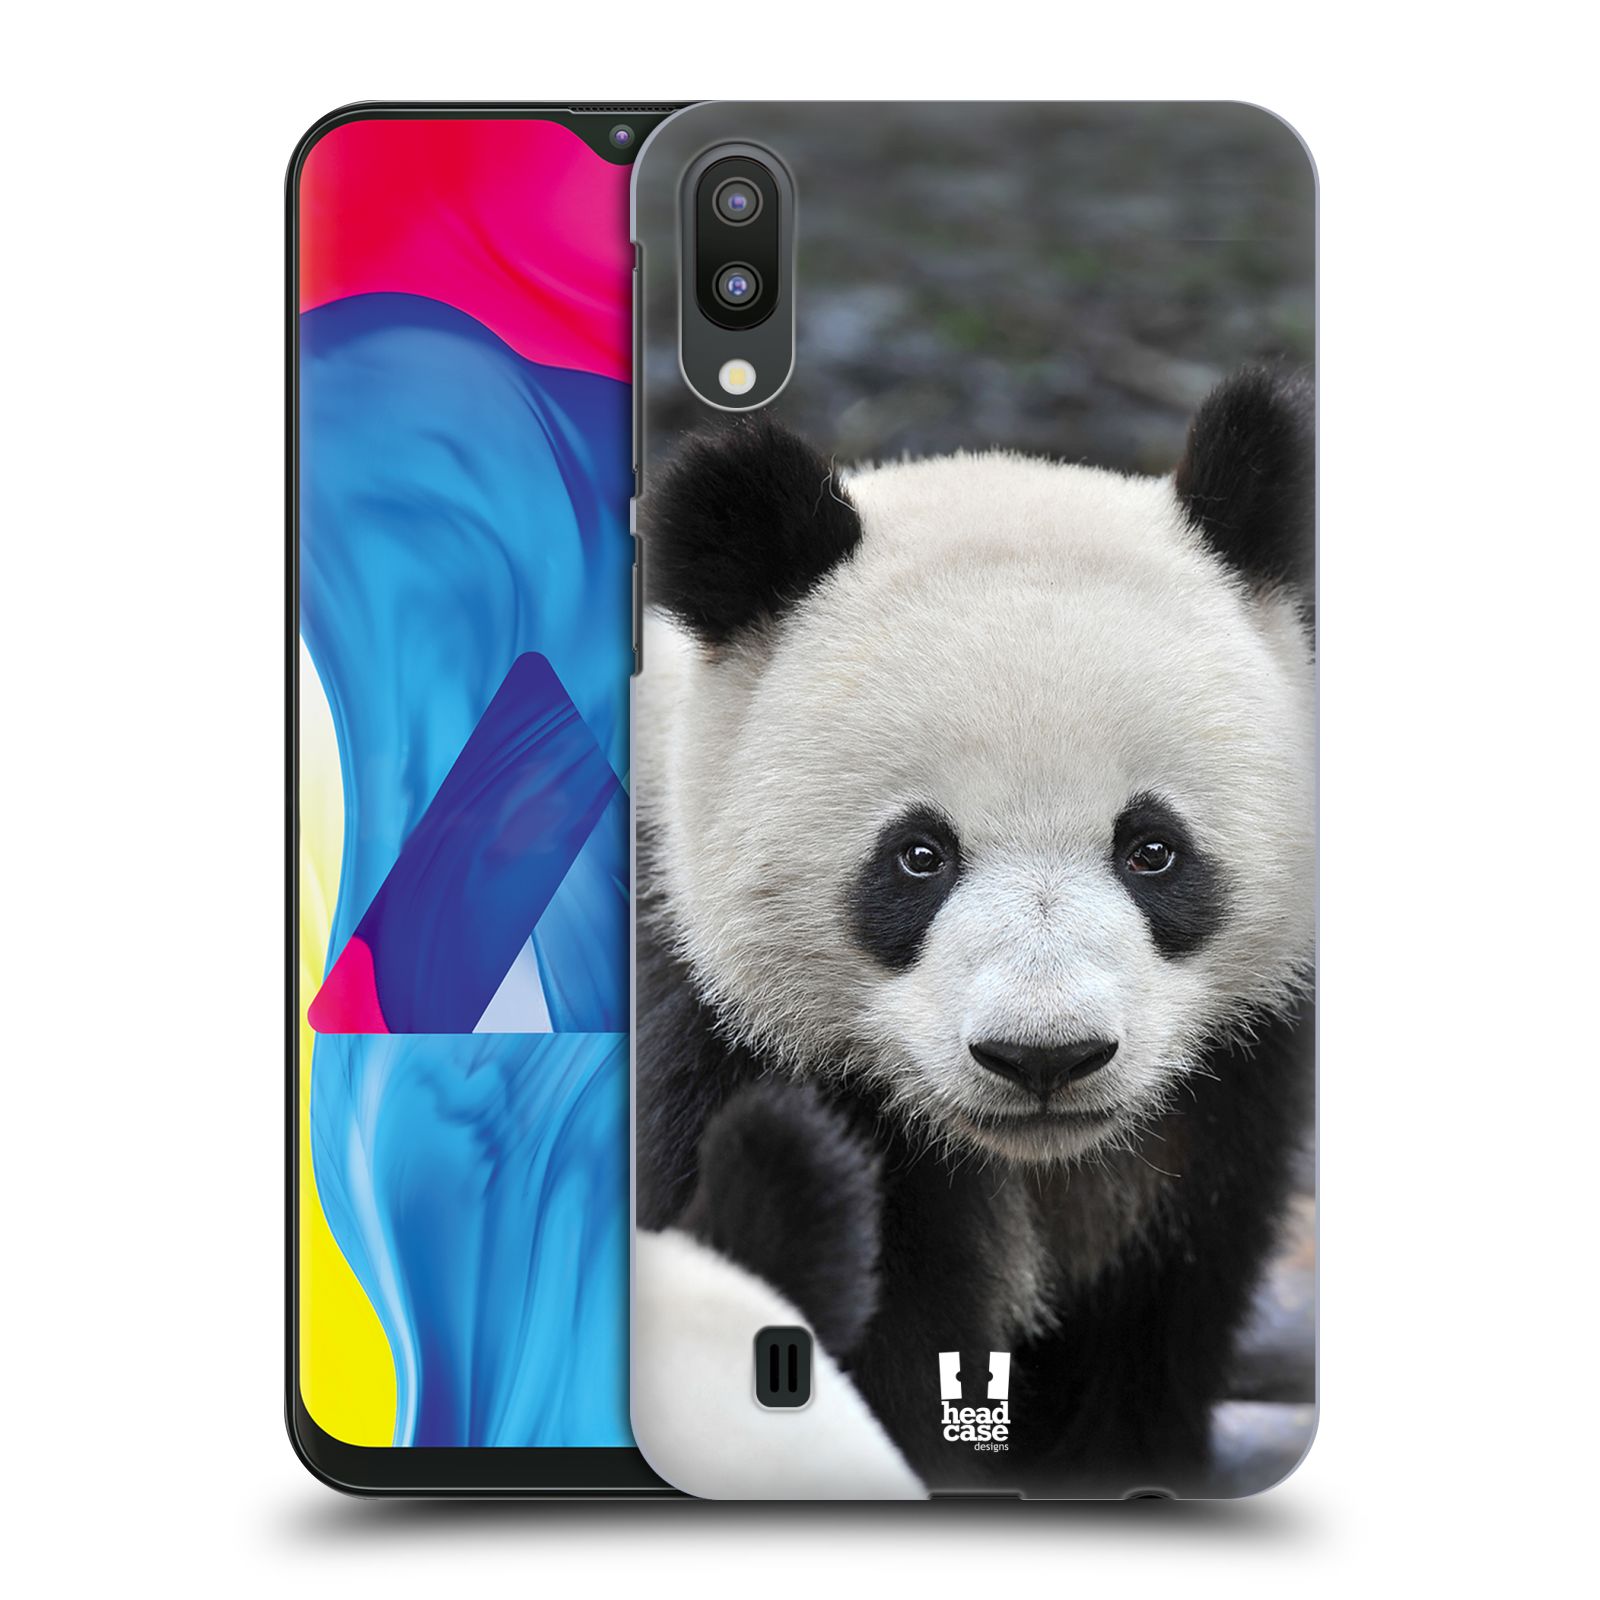 Plastový obal HEAD CASE na mobil Samsung Galaxy M10 vzor Divočina, Divoký život a zvířata foto MEDVĚD PANDA